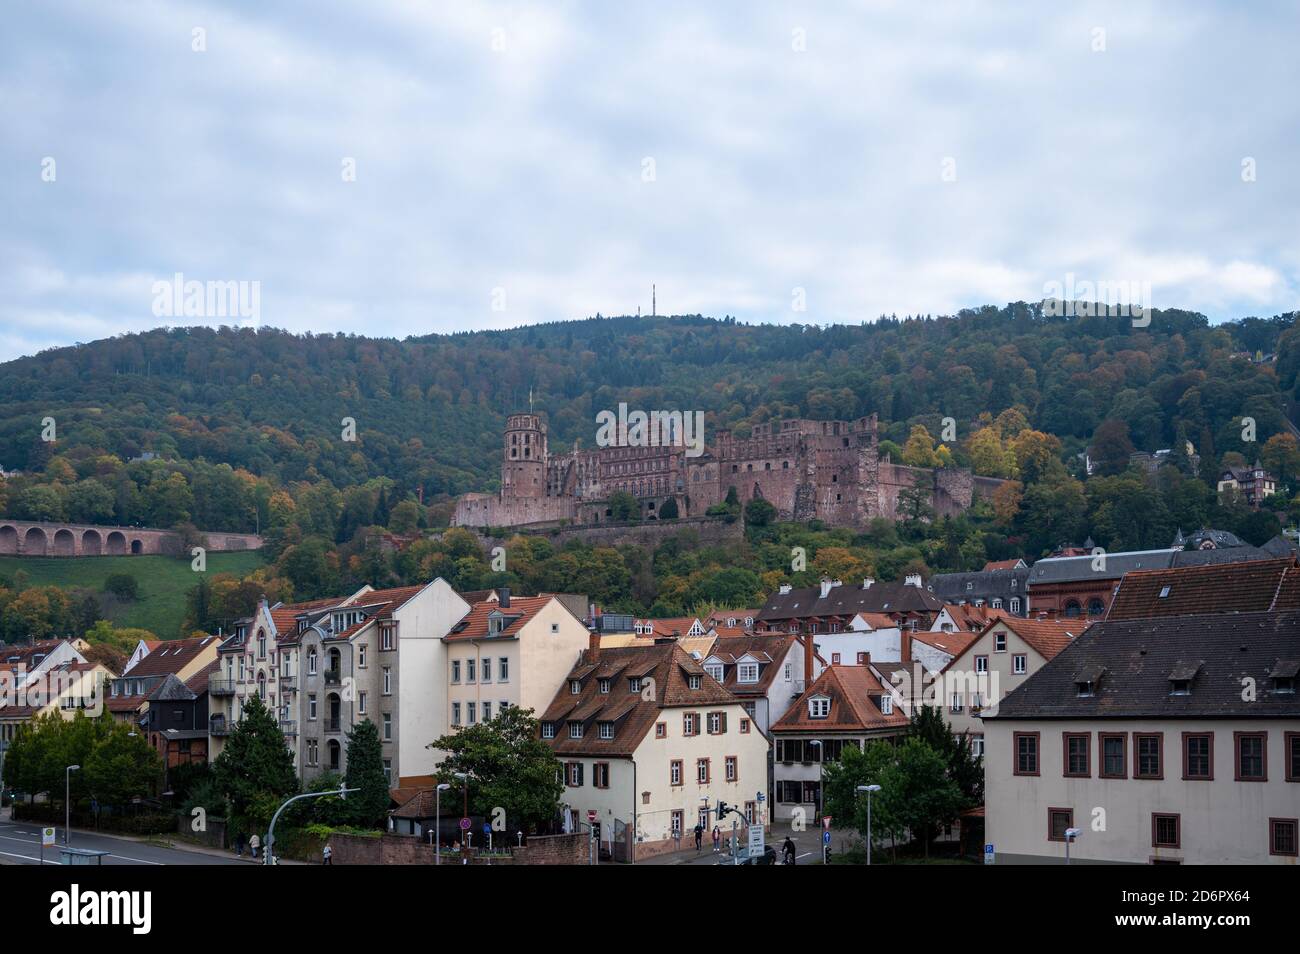 Reisen, Deutschland, Badenwürtemberg, Heidelberg, Alte Brücke, October 18. Das Schloss in Heidelberg im Herbst. Von der Alten Brücke aus gesehen, die Stock Photo